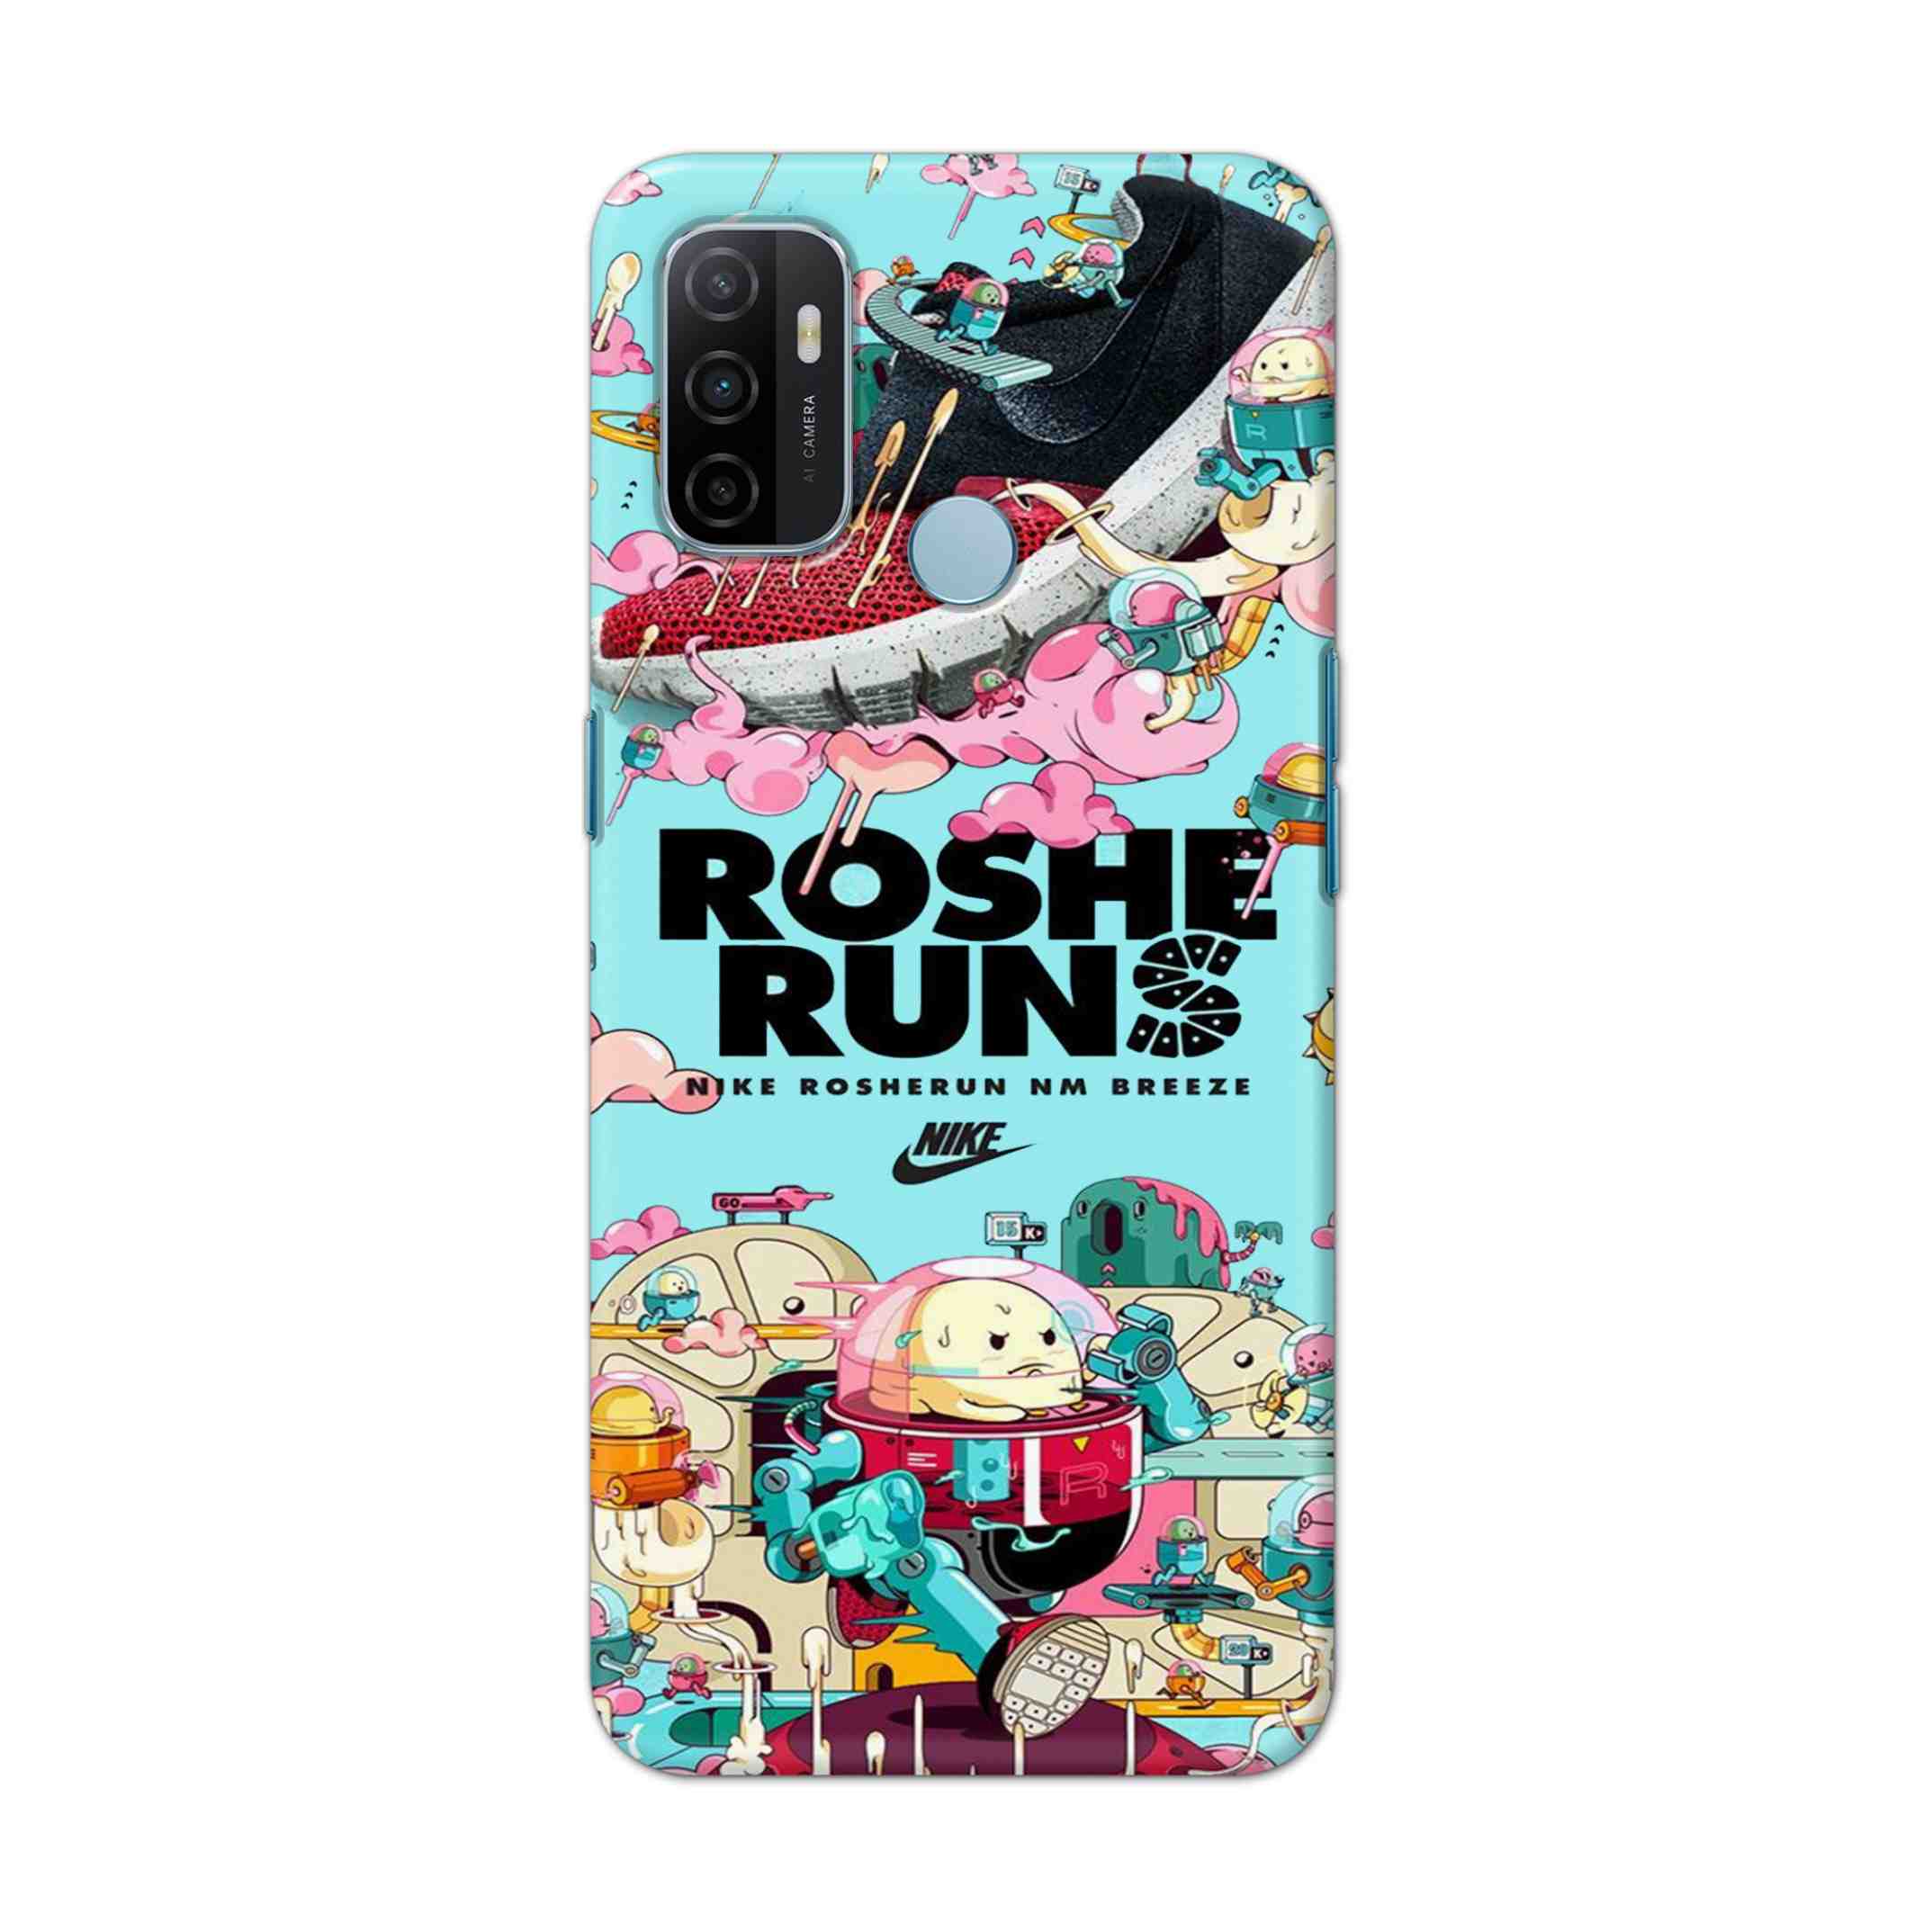 Buy Roshe Runs Hard Back Mobile Phone Case Cover For OPPO A53 (2020) Online